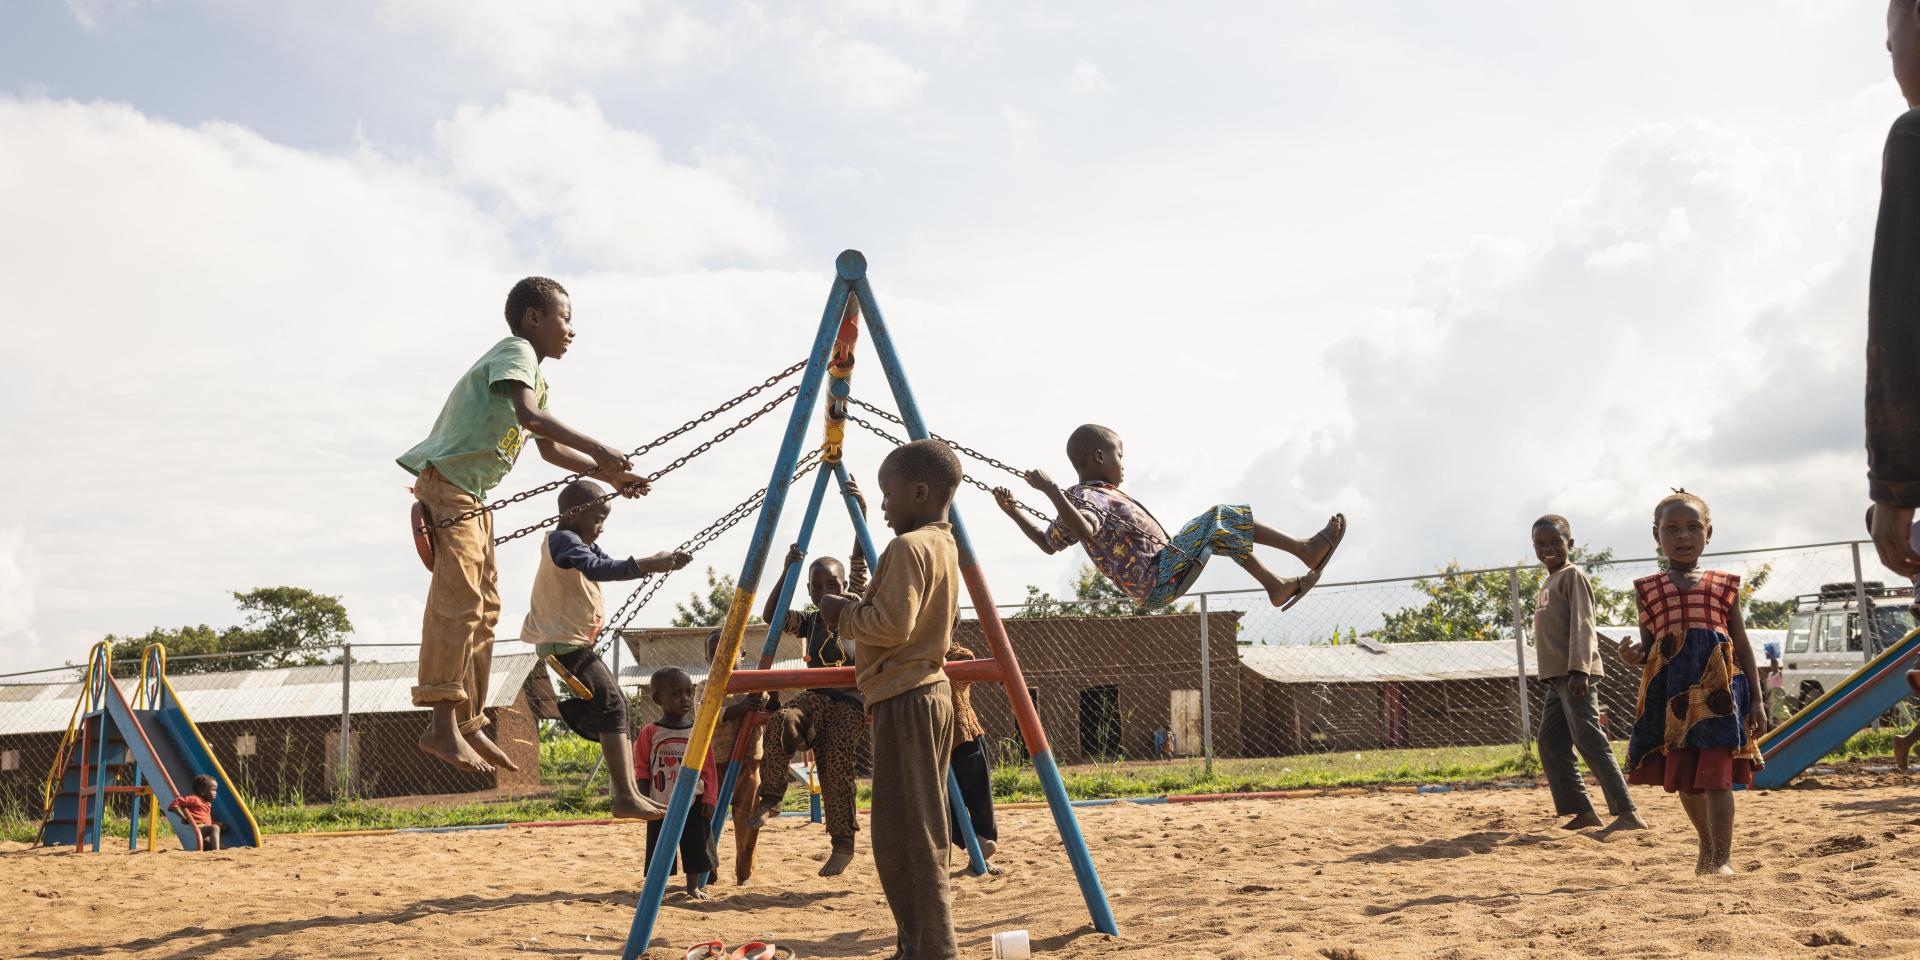 Bambini giocano e vanno in altalena in uno Spazio a Misura di Bambino in un campo rifugiati in Uganda